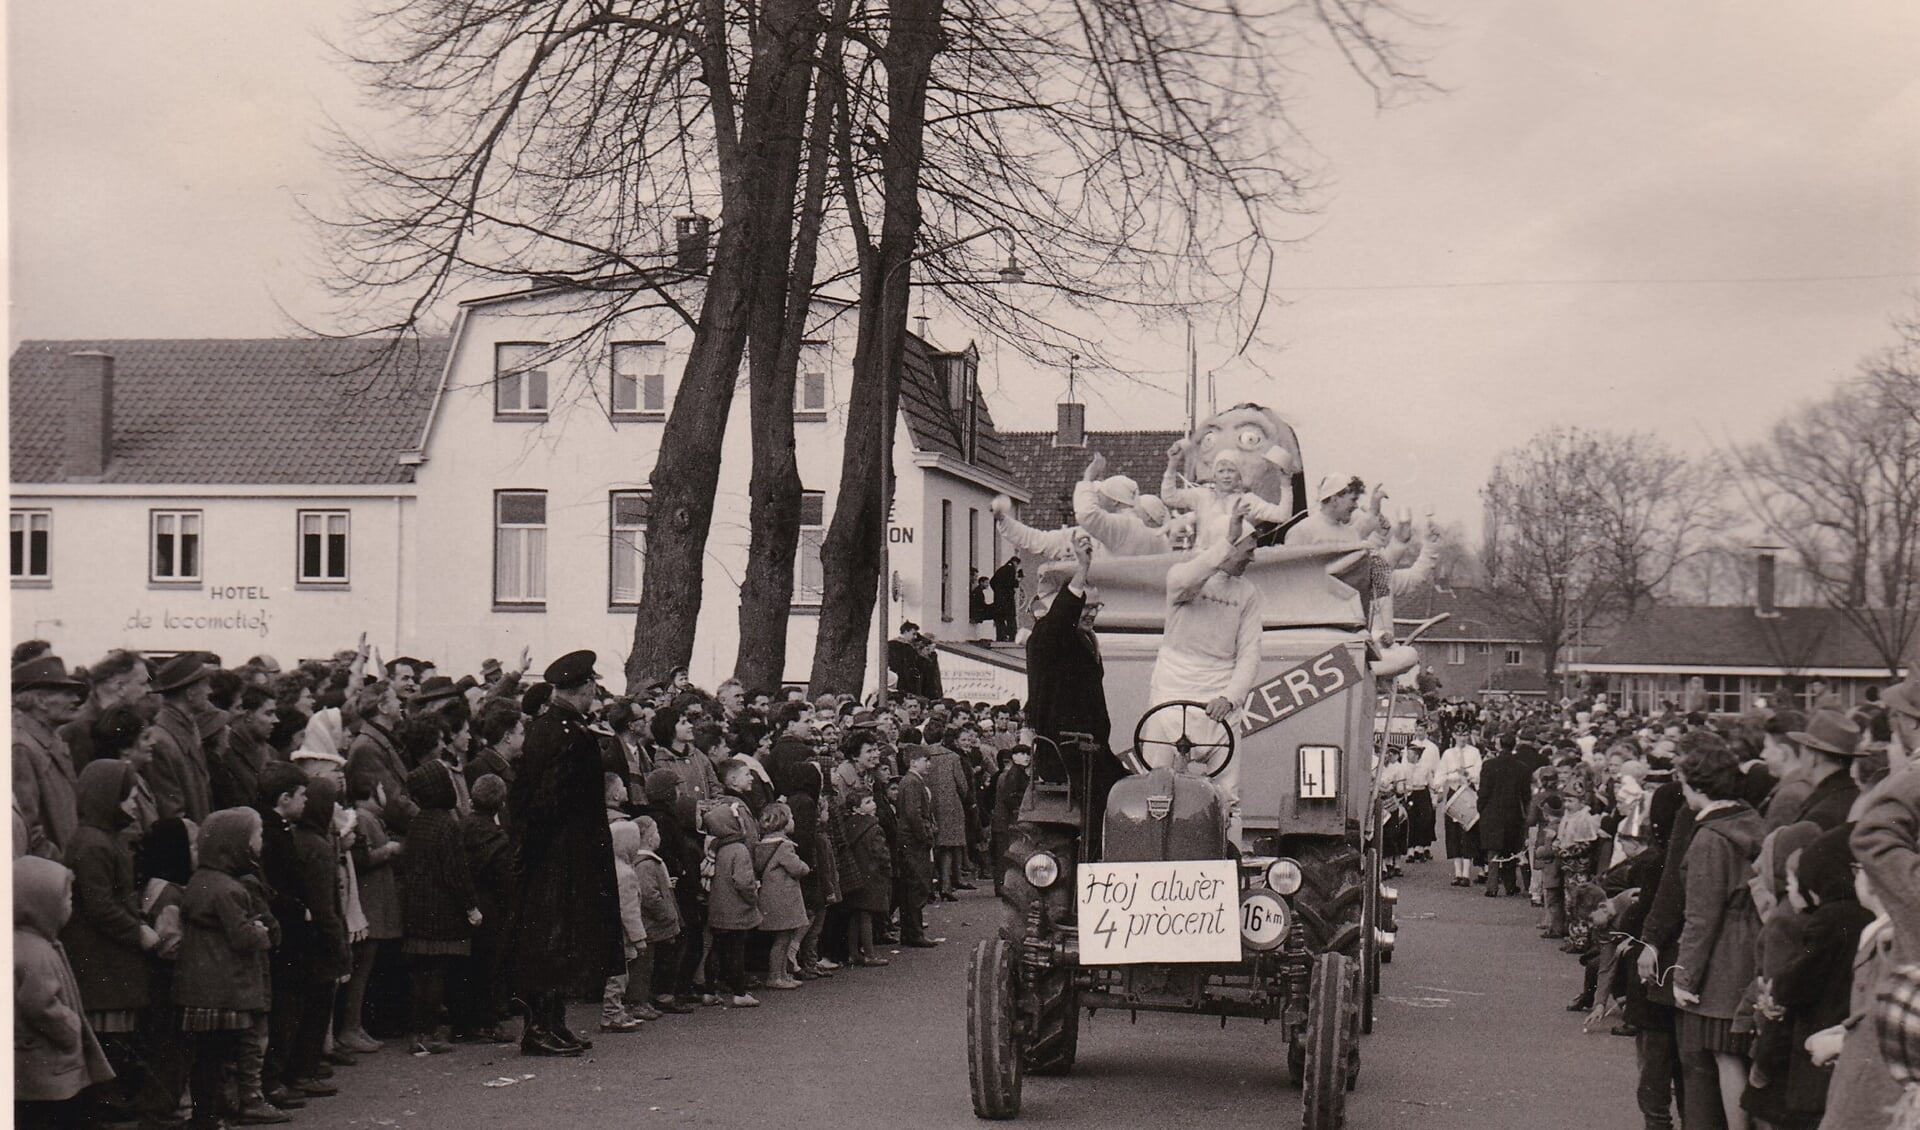 Foto uit 1961. Dorpsstraat ter hoogte huidige gemeentehuis. De carnavalswagen wordt getrokken door een tractor, misschien wel voor het eerst. Achter de wagen loopt de drumband van de schutterij St. Hubertus. (foto: collectie GGD)